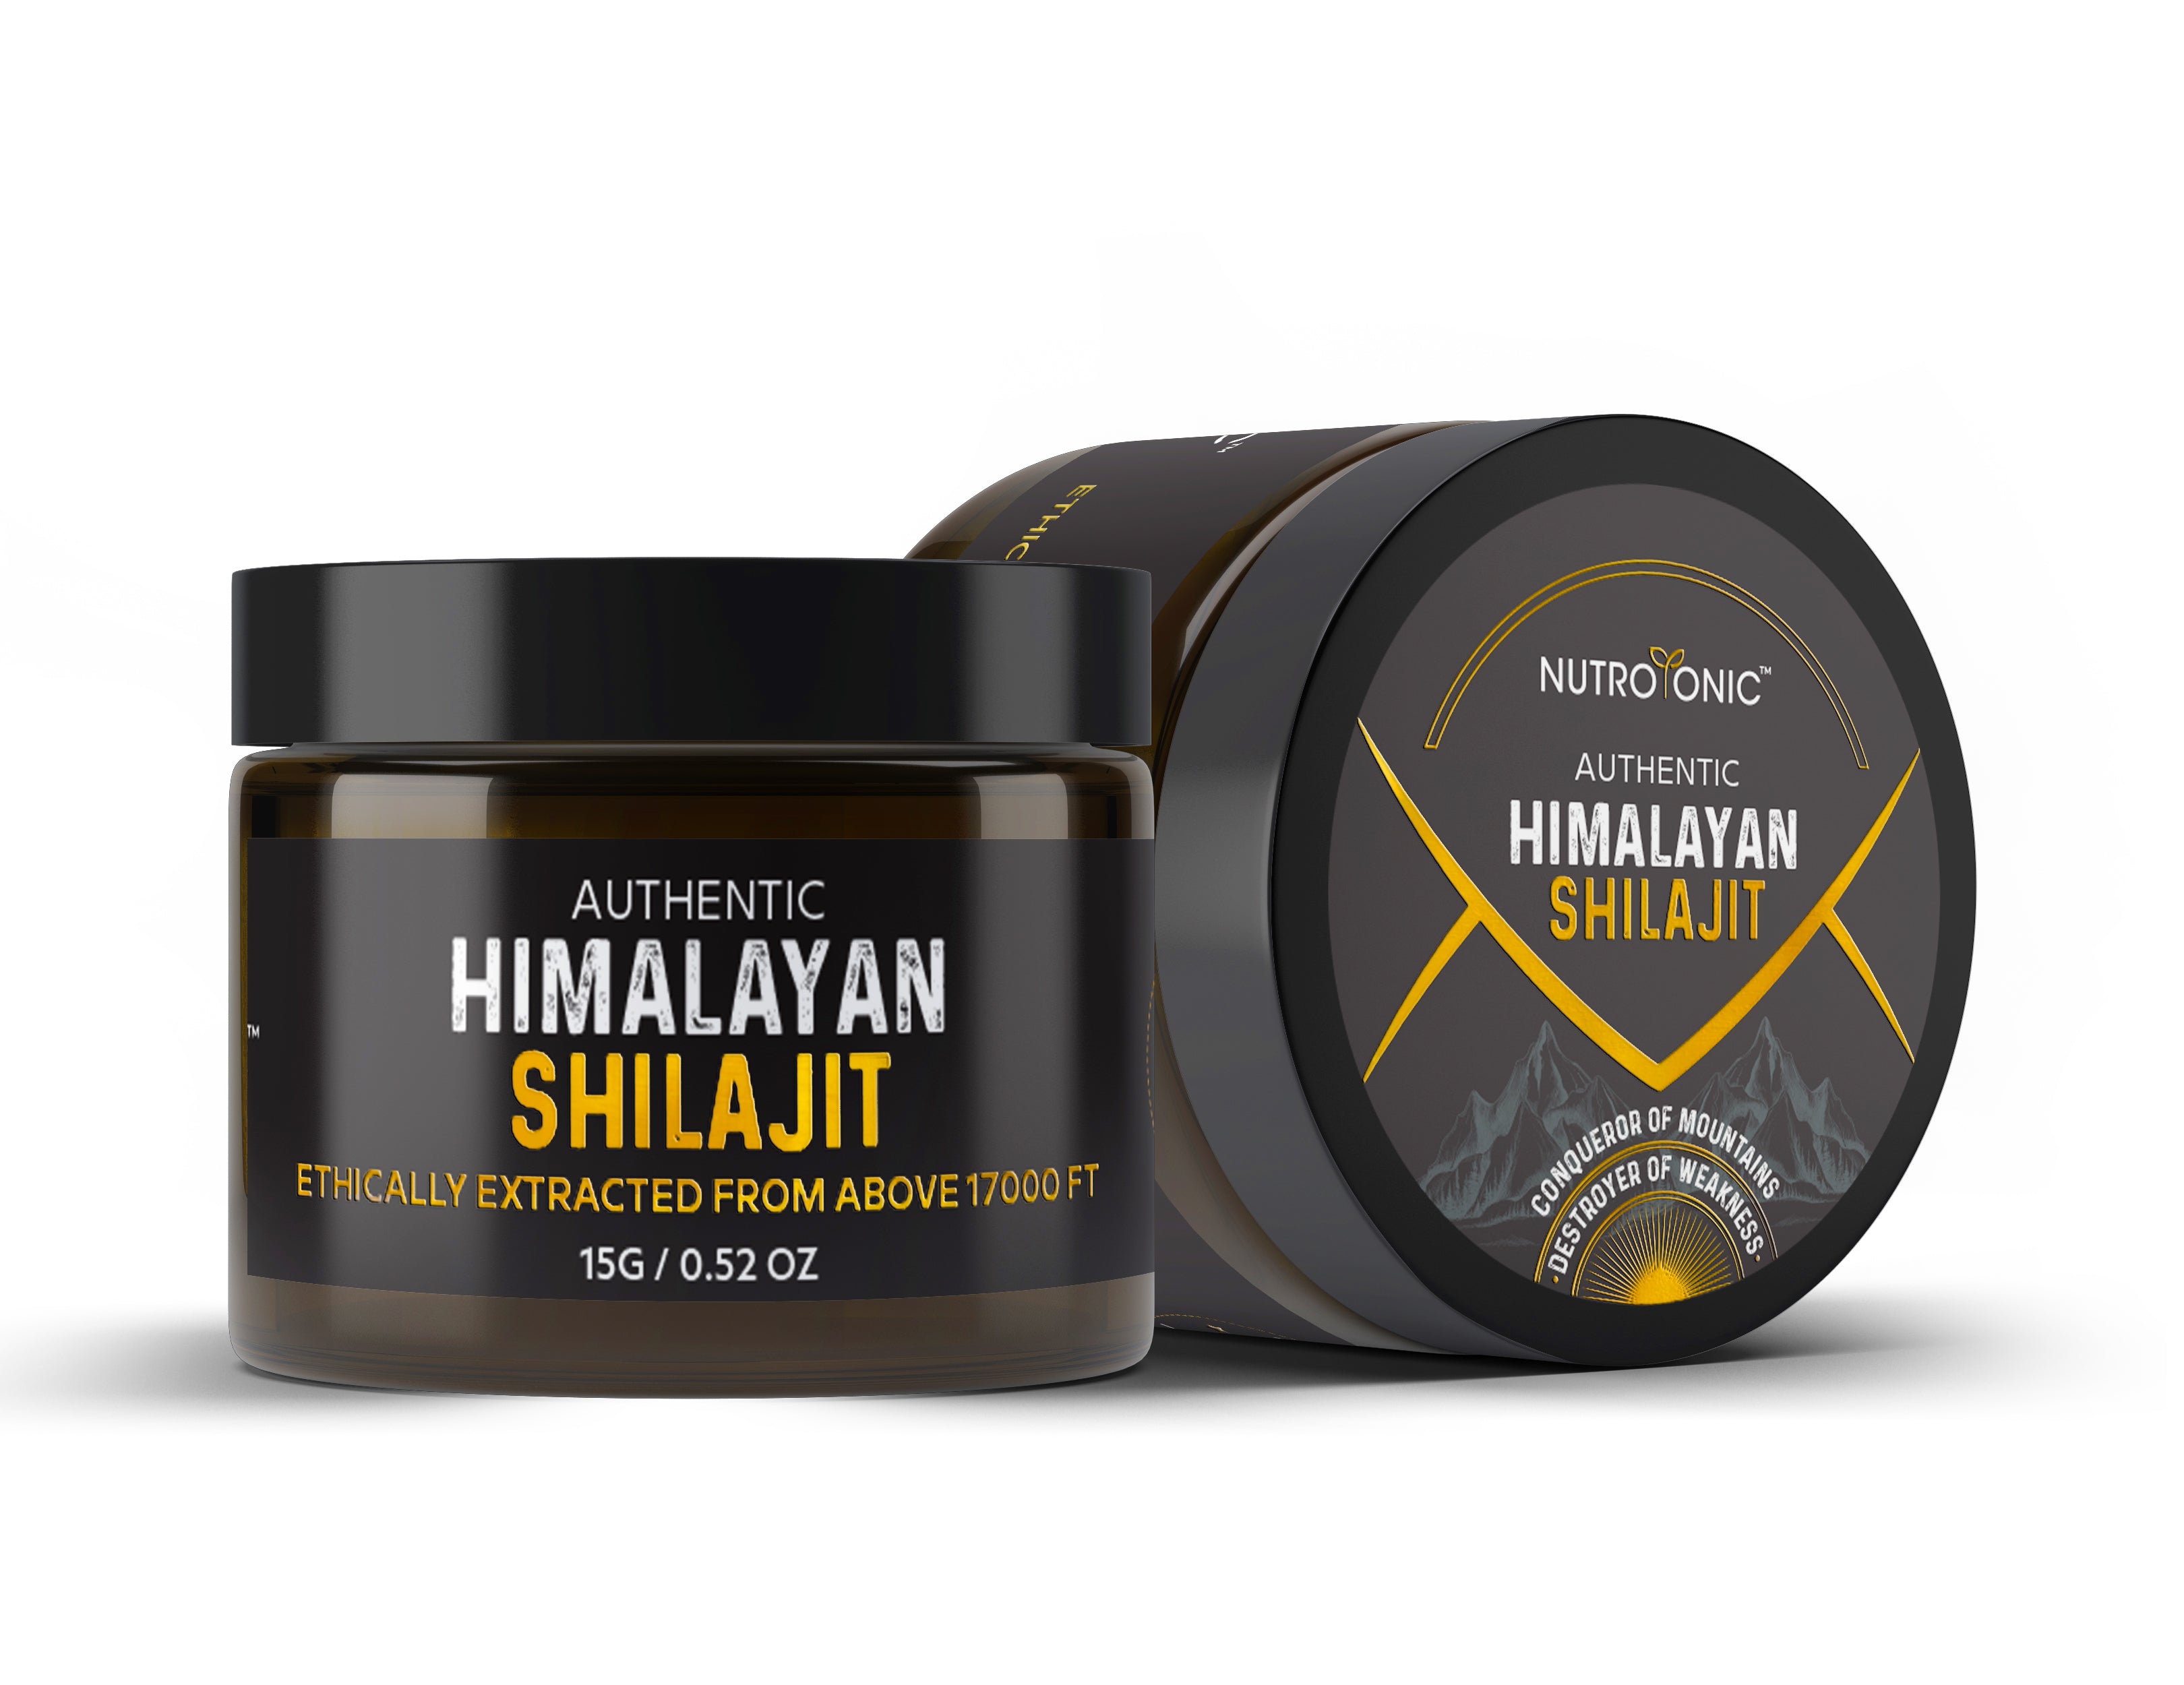 HEALTH BENEFITS OF HIMALAYAN SHILAJIT